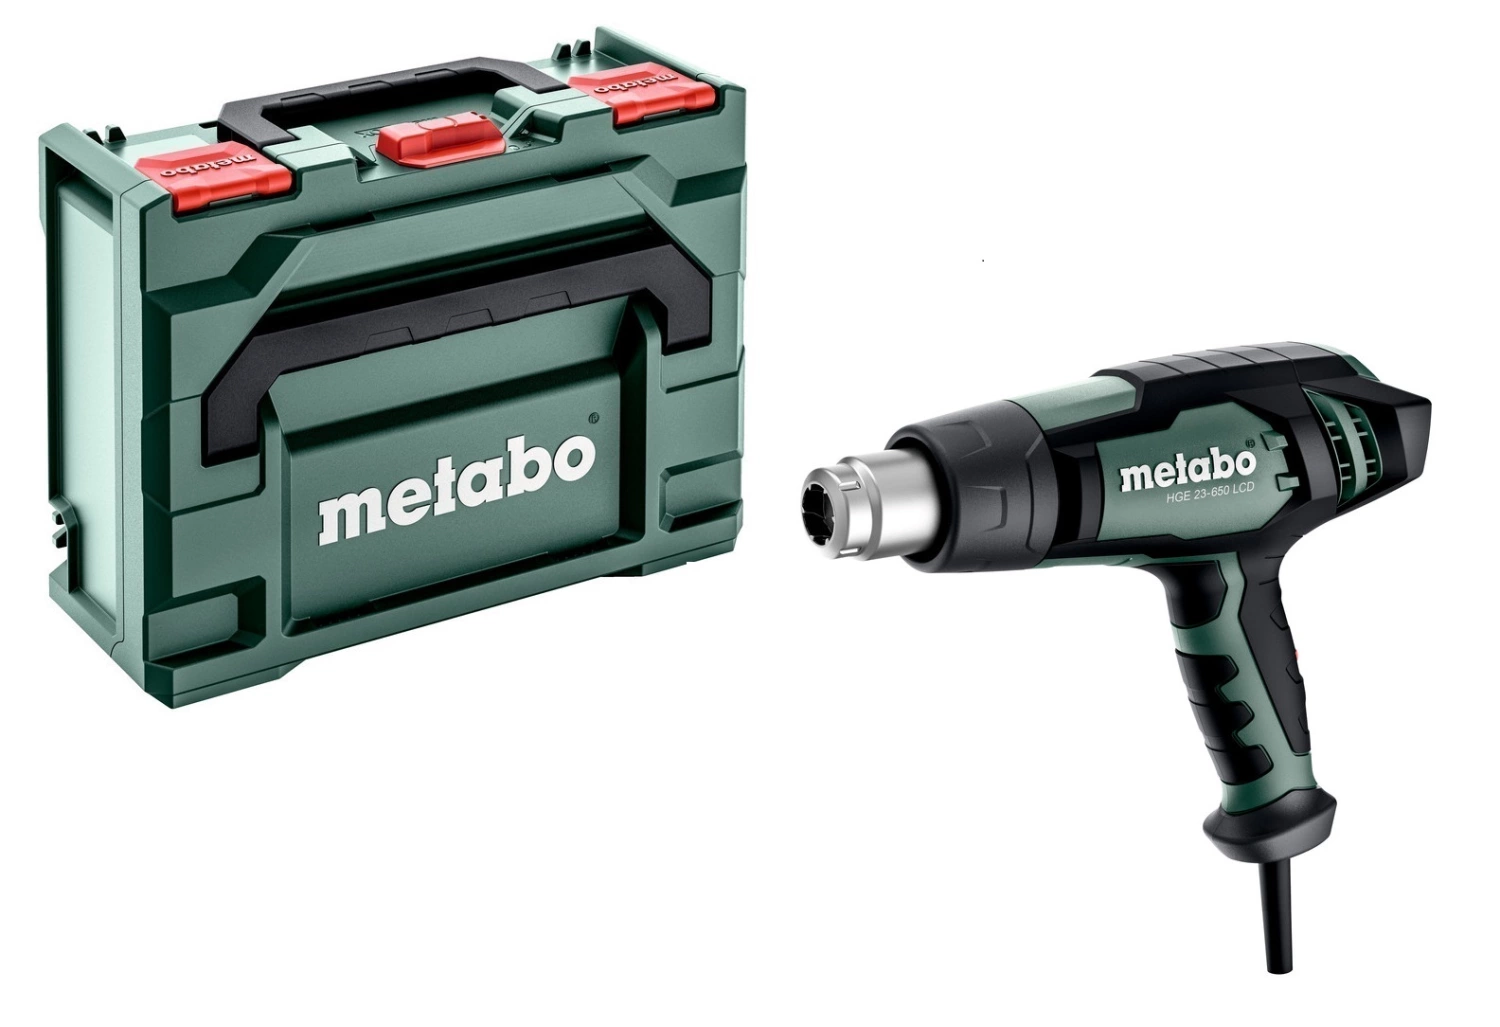 Metabo HGE 23-650 LCD Heteluchtpistool incl. accessoires in MetaboBox - 2300W